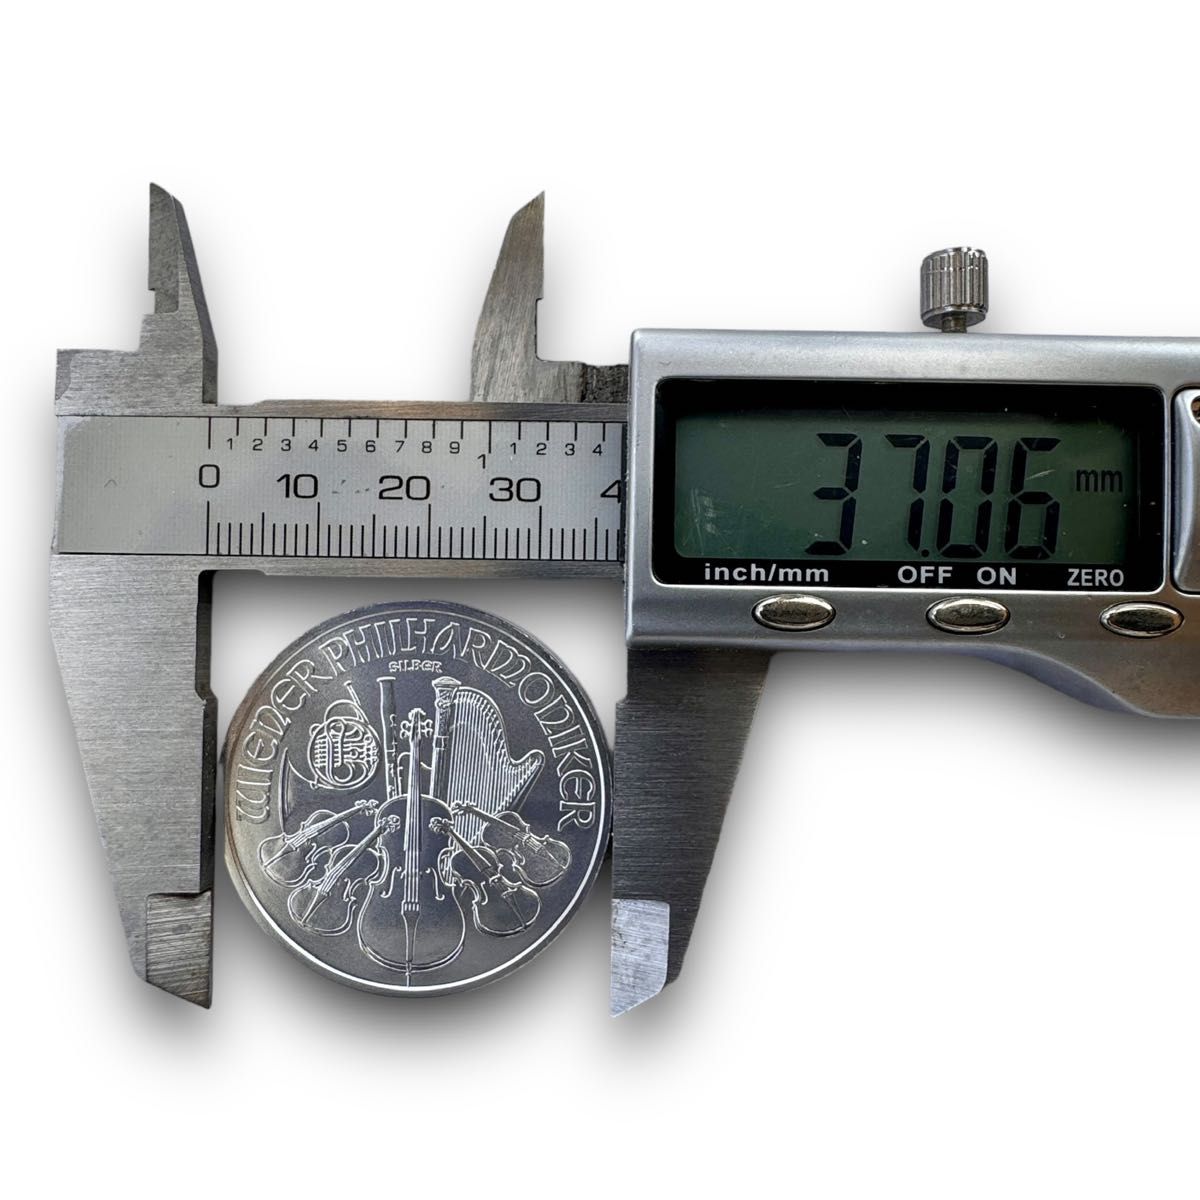 025-SU【2024年発行】オーストリア ウィーンフィル銀貨 1.50ユーロ 1オンス 銀貨 FINE SILVER